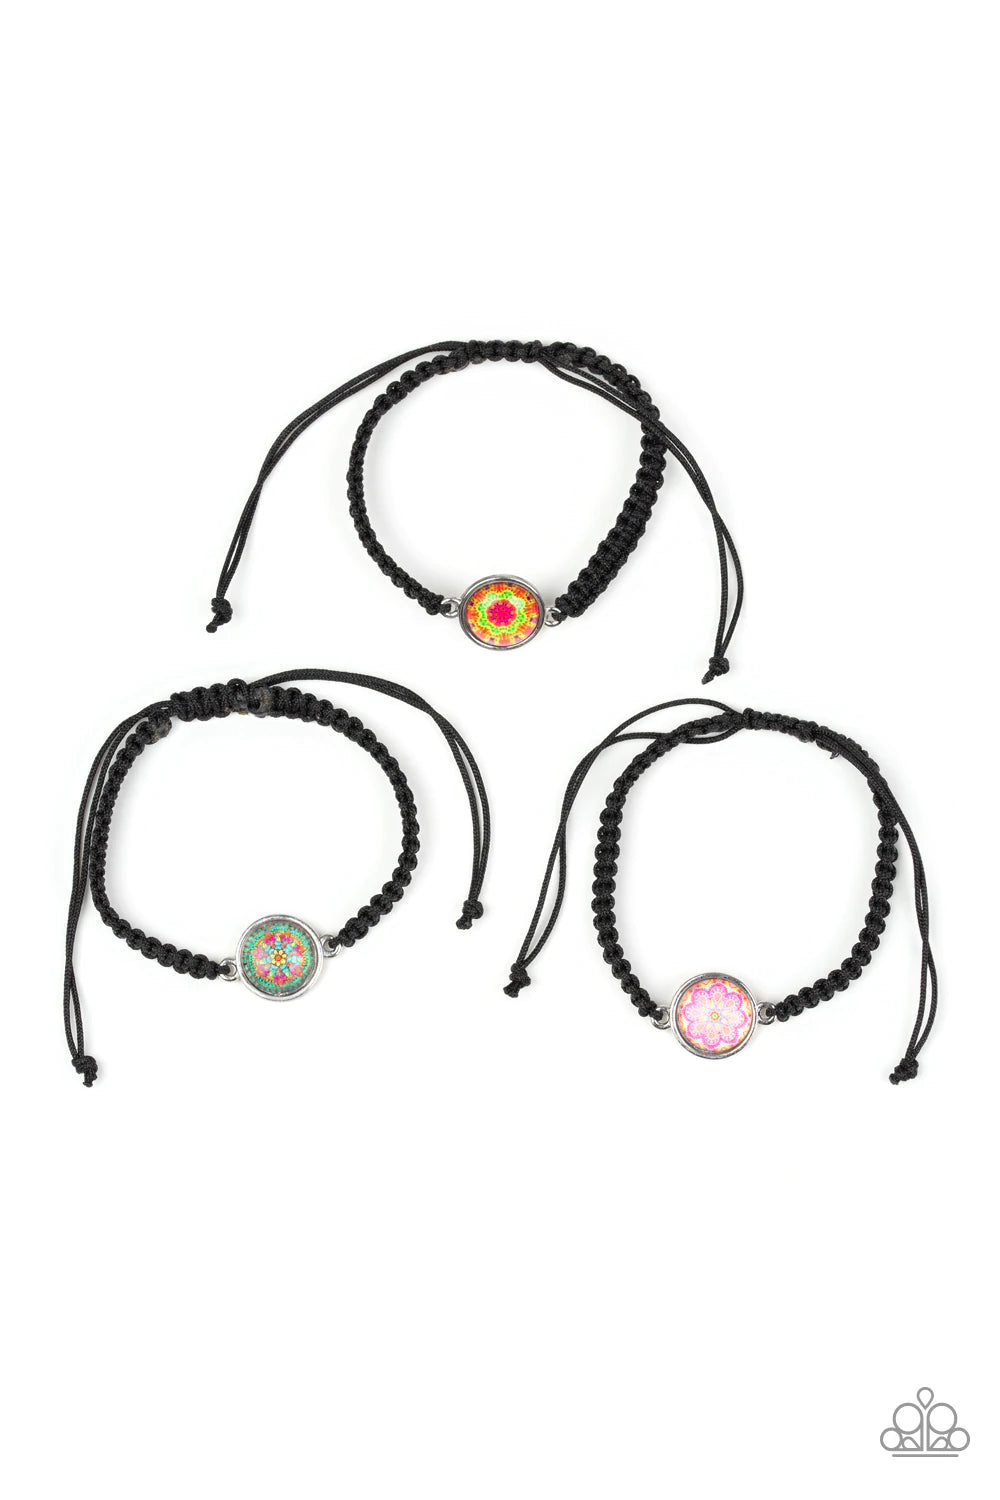 Starlet Shimmer Mandala Design Pull String Bracelet Kit – Frank Divas